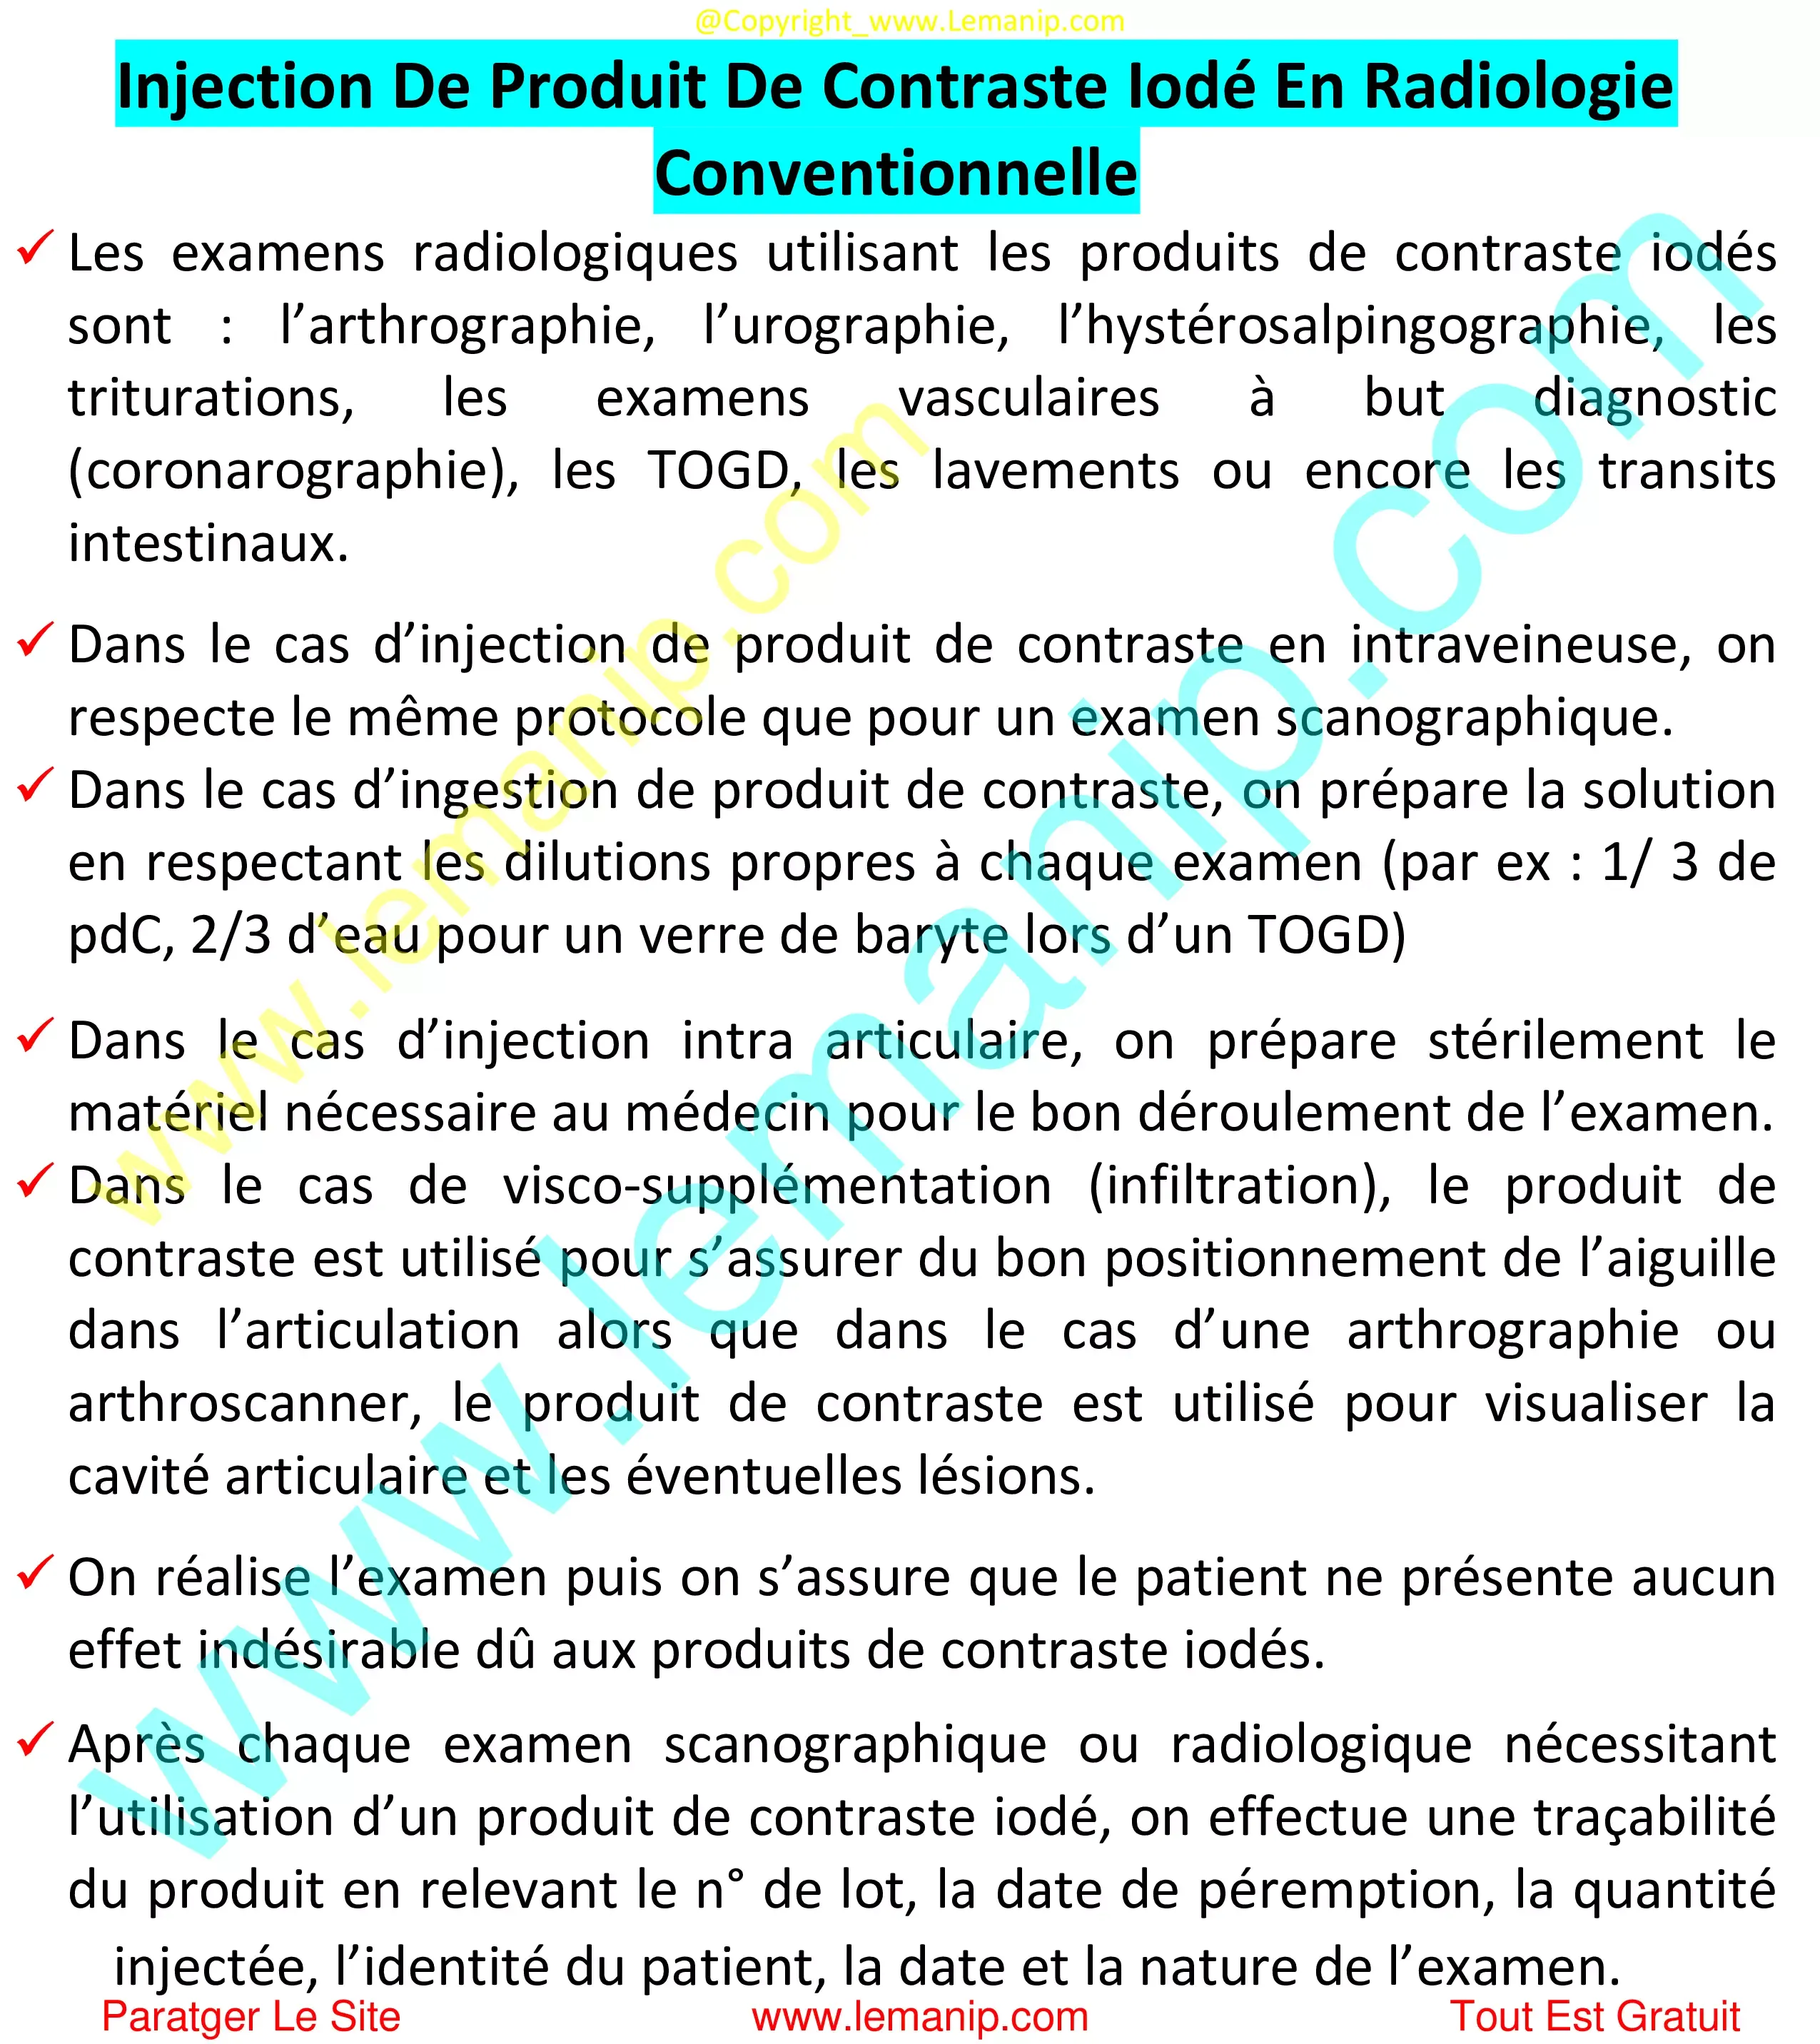 Injection De Produit De Contraste Iodé En Radiologie Conventionnelle